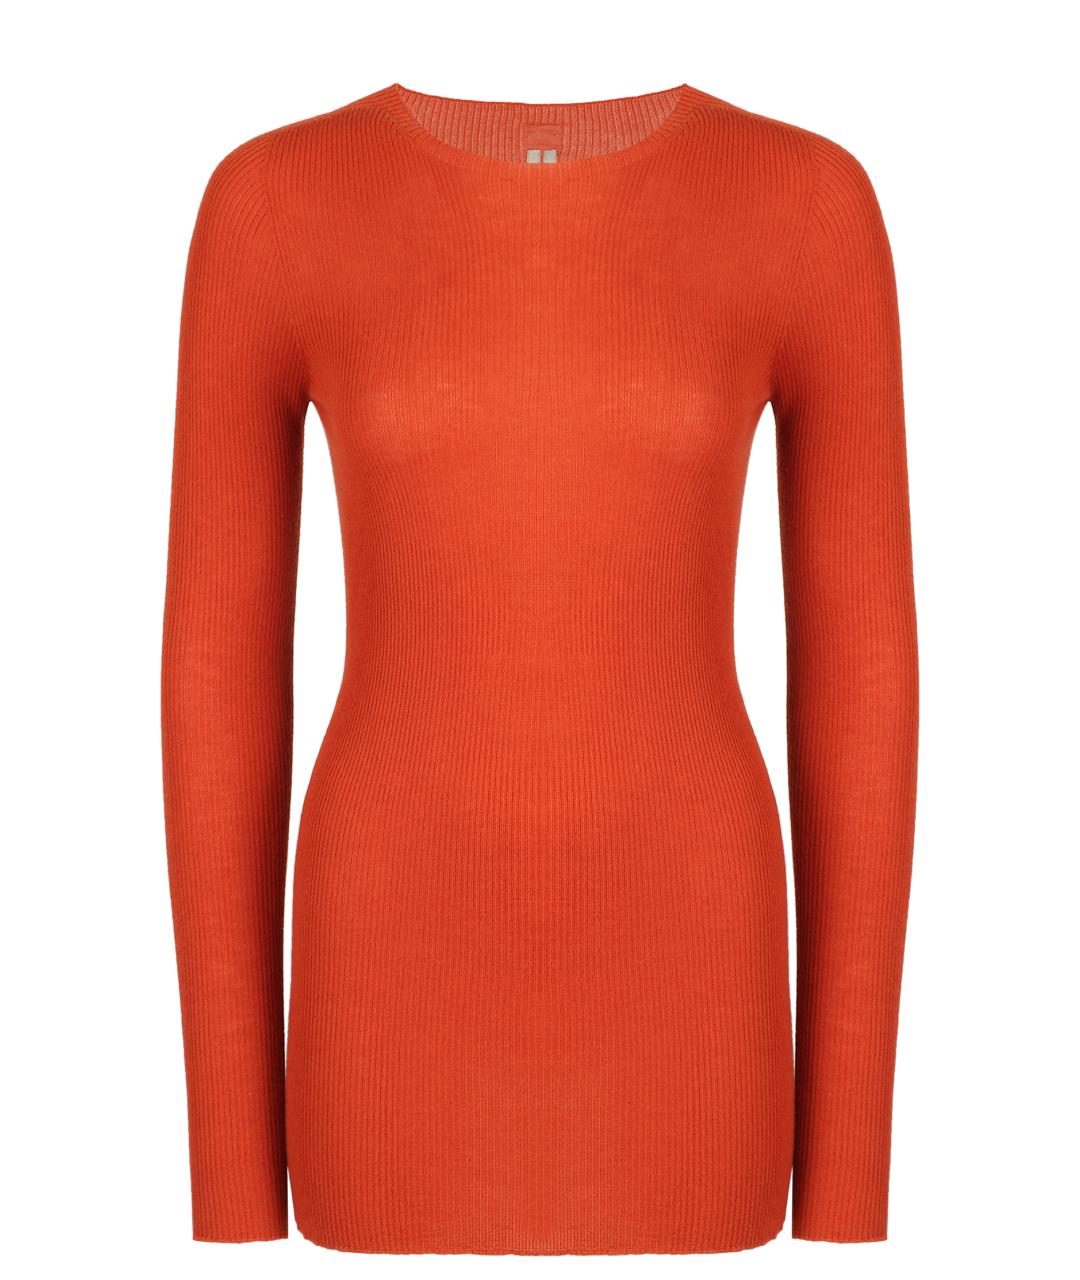 RICK OWENS Оранжевый кашемировый джемпер / свитер, фото 1